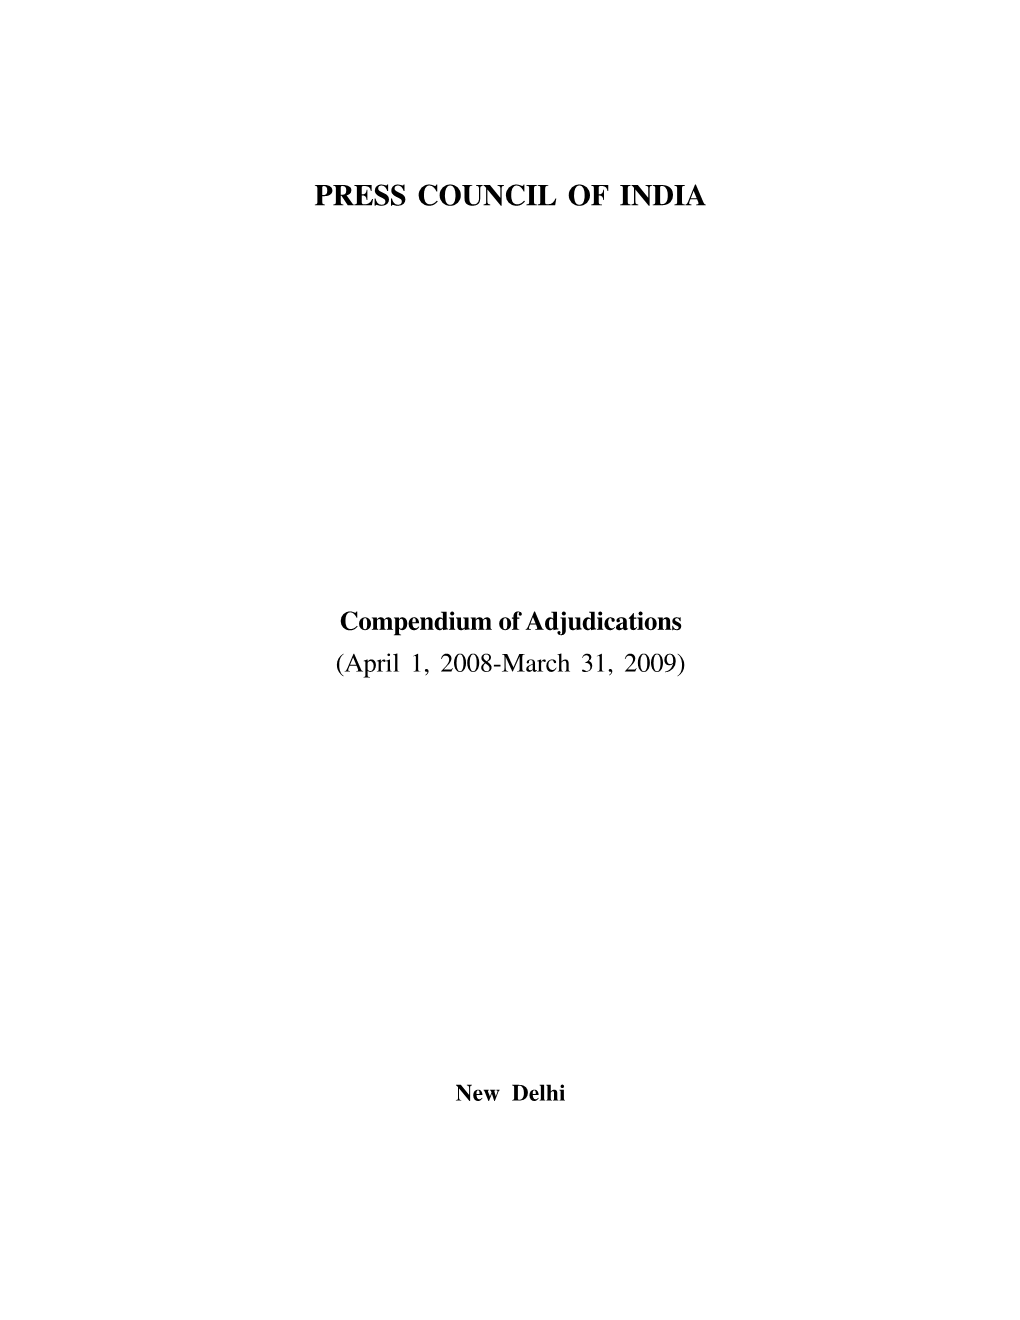 Compendium of Adjudications 2008-2009